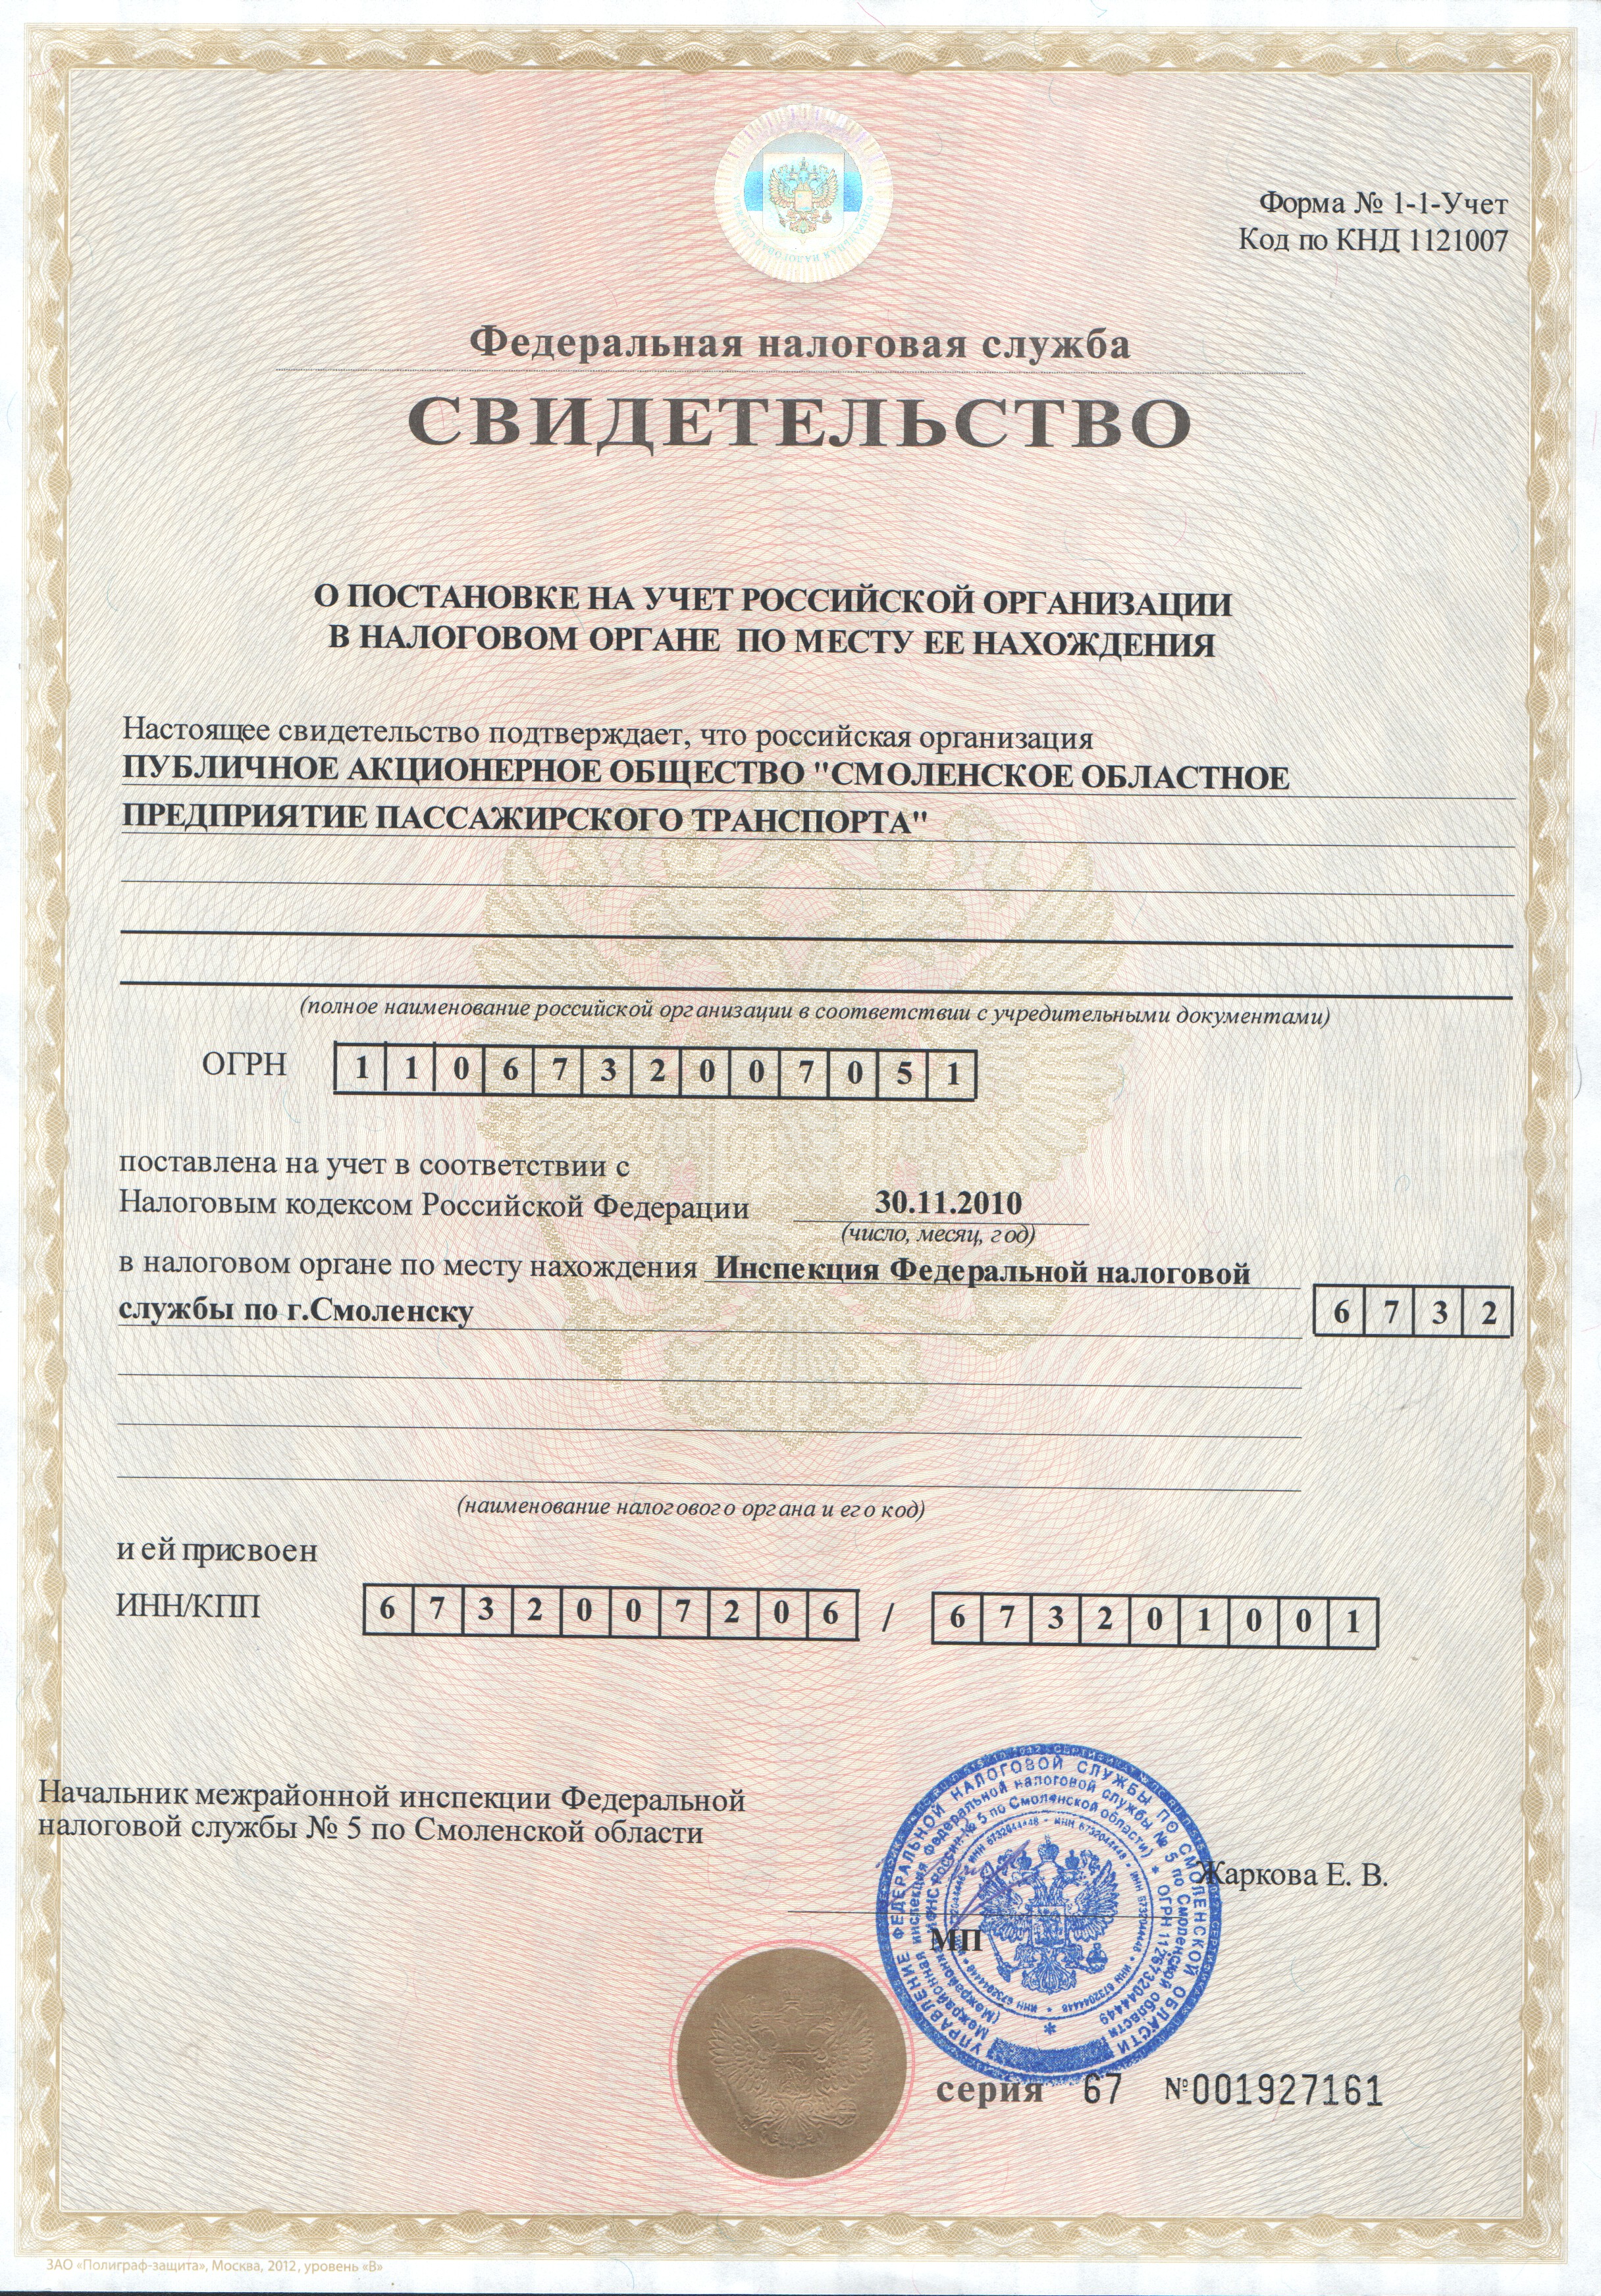 Свидетельство о постановке на учет Российской организации в налоговом органе по месту ее нахождения